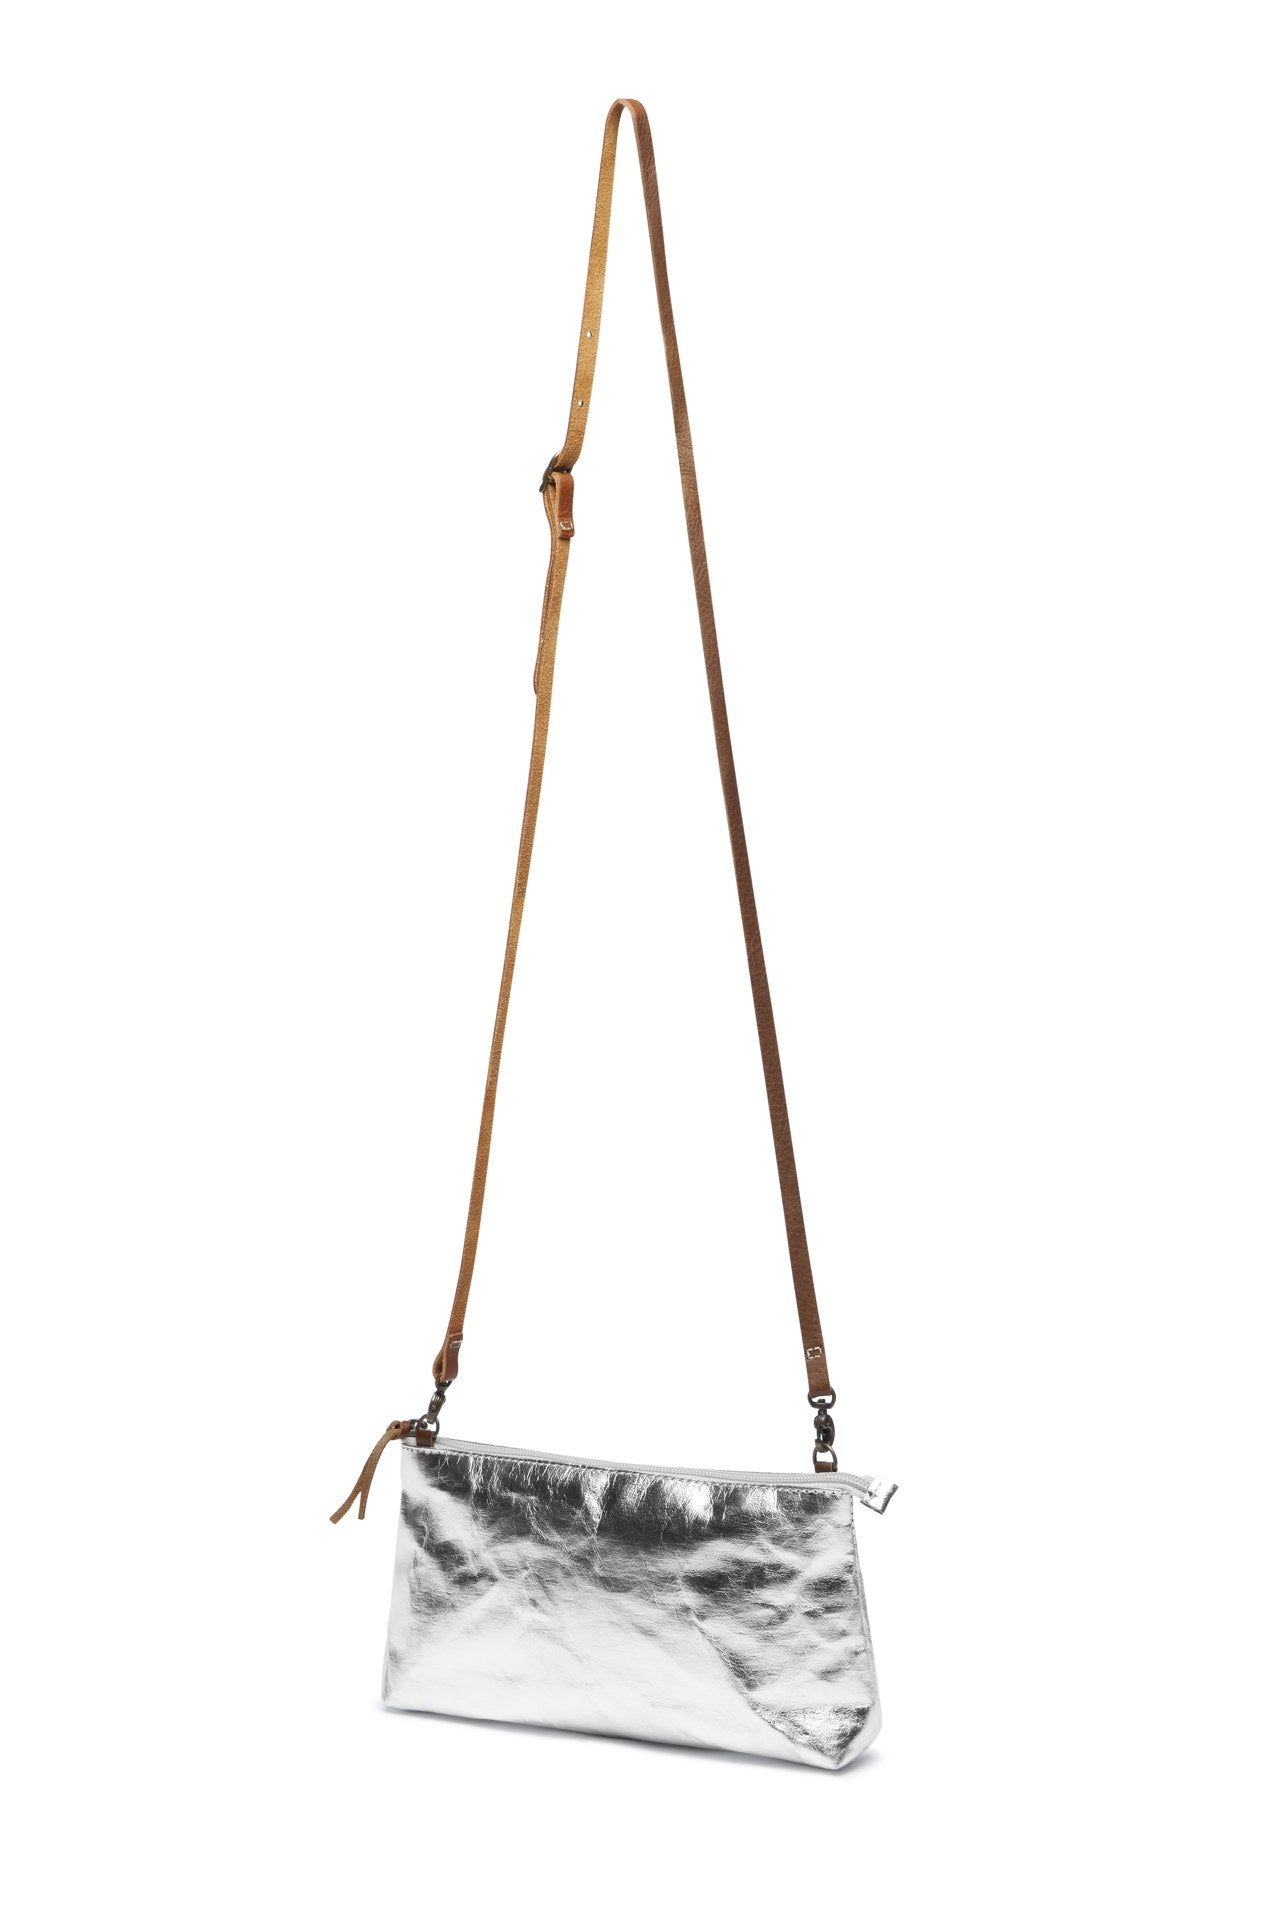 Uashmama Fashionable Crossbody or Clutch Handbag